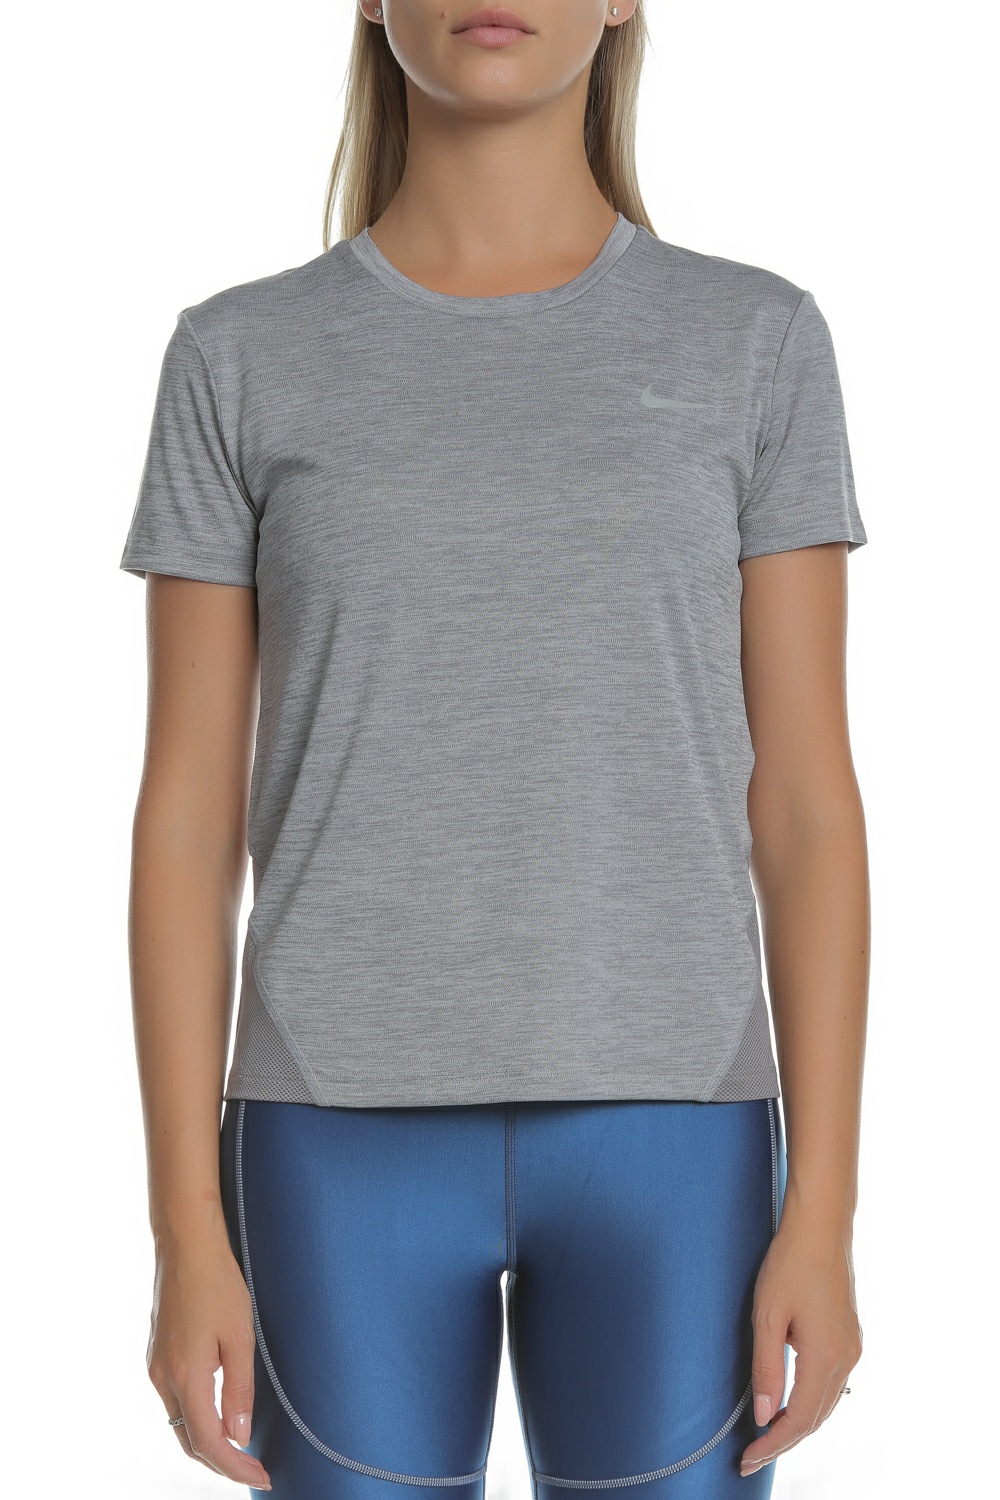 Γυναικεία/Ρούχα/Αθλητικά/T-shirt-Τοπ NIKE - Γυναικεία μπλούζα NIKE MILER TOP γκρι